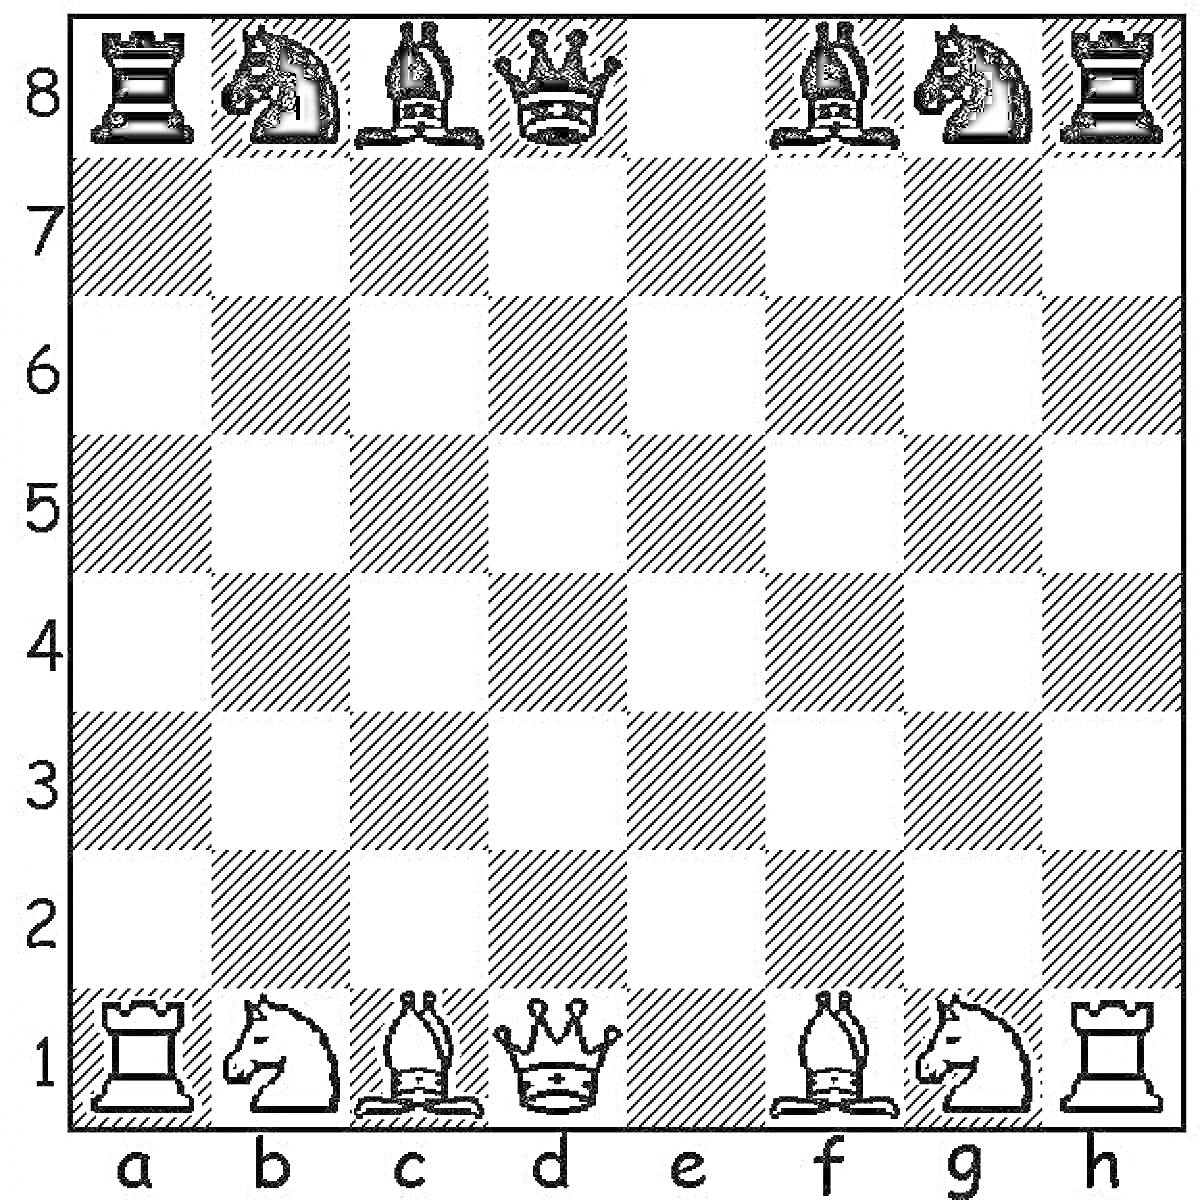 Шахматная доска с белыми и чёрными фигурами (ладья, конь, слон, ферзь, король, слон, конь, ладья) по краям